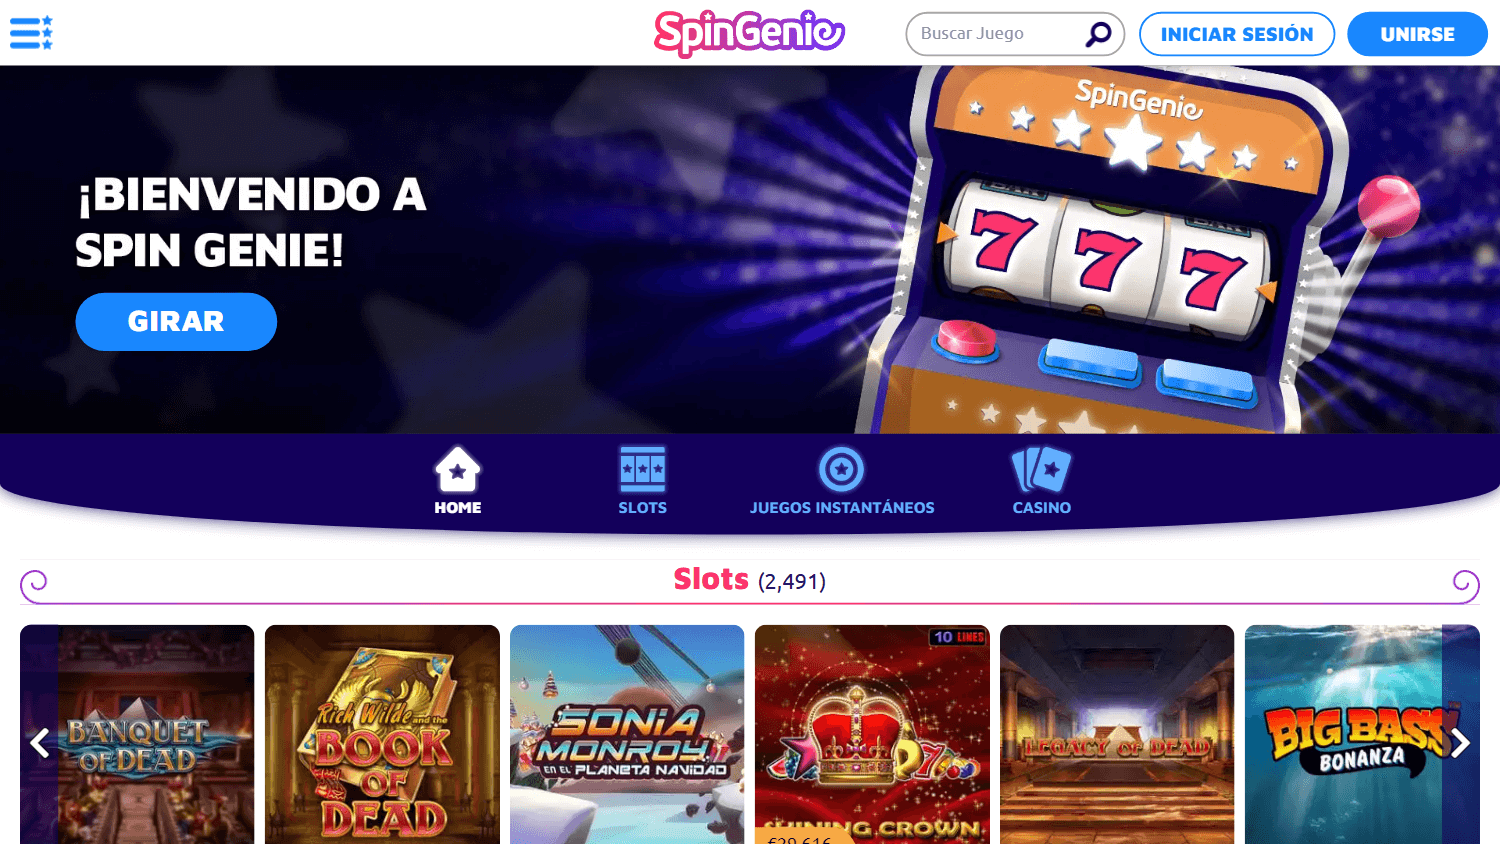 spingenie_casino_es_homepage_desktop